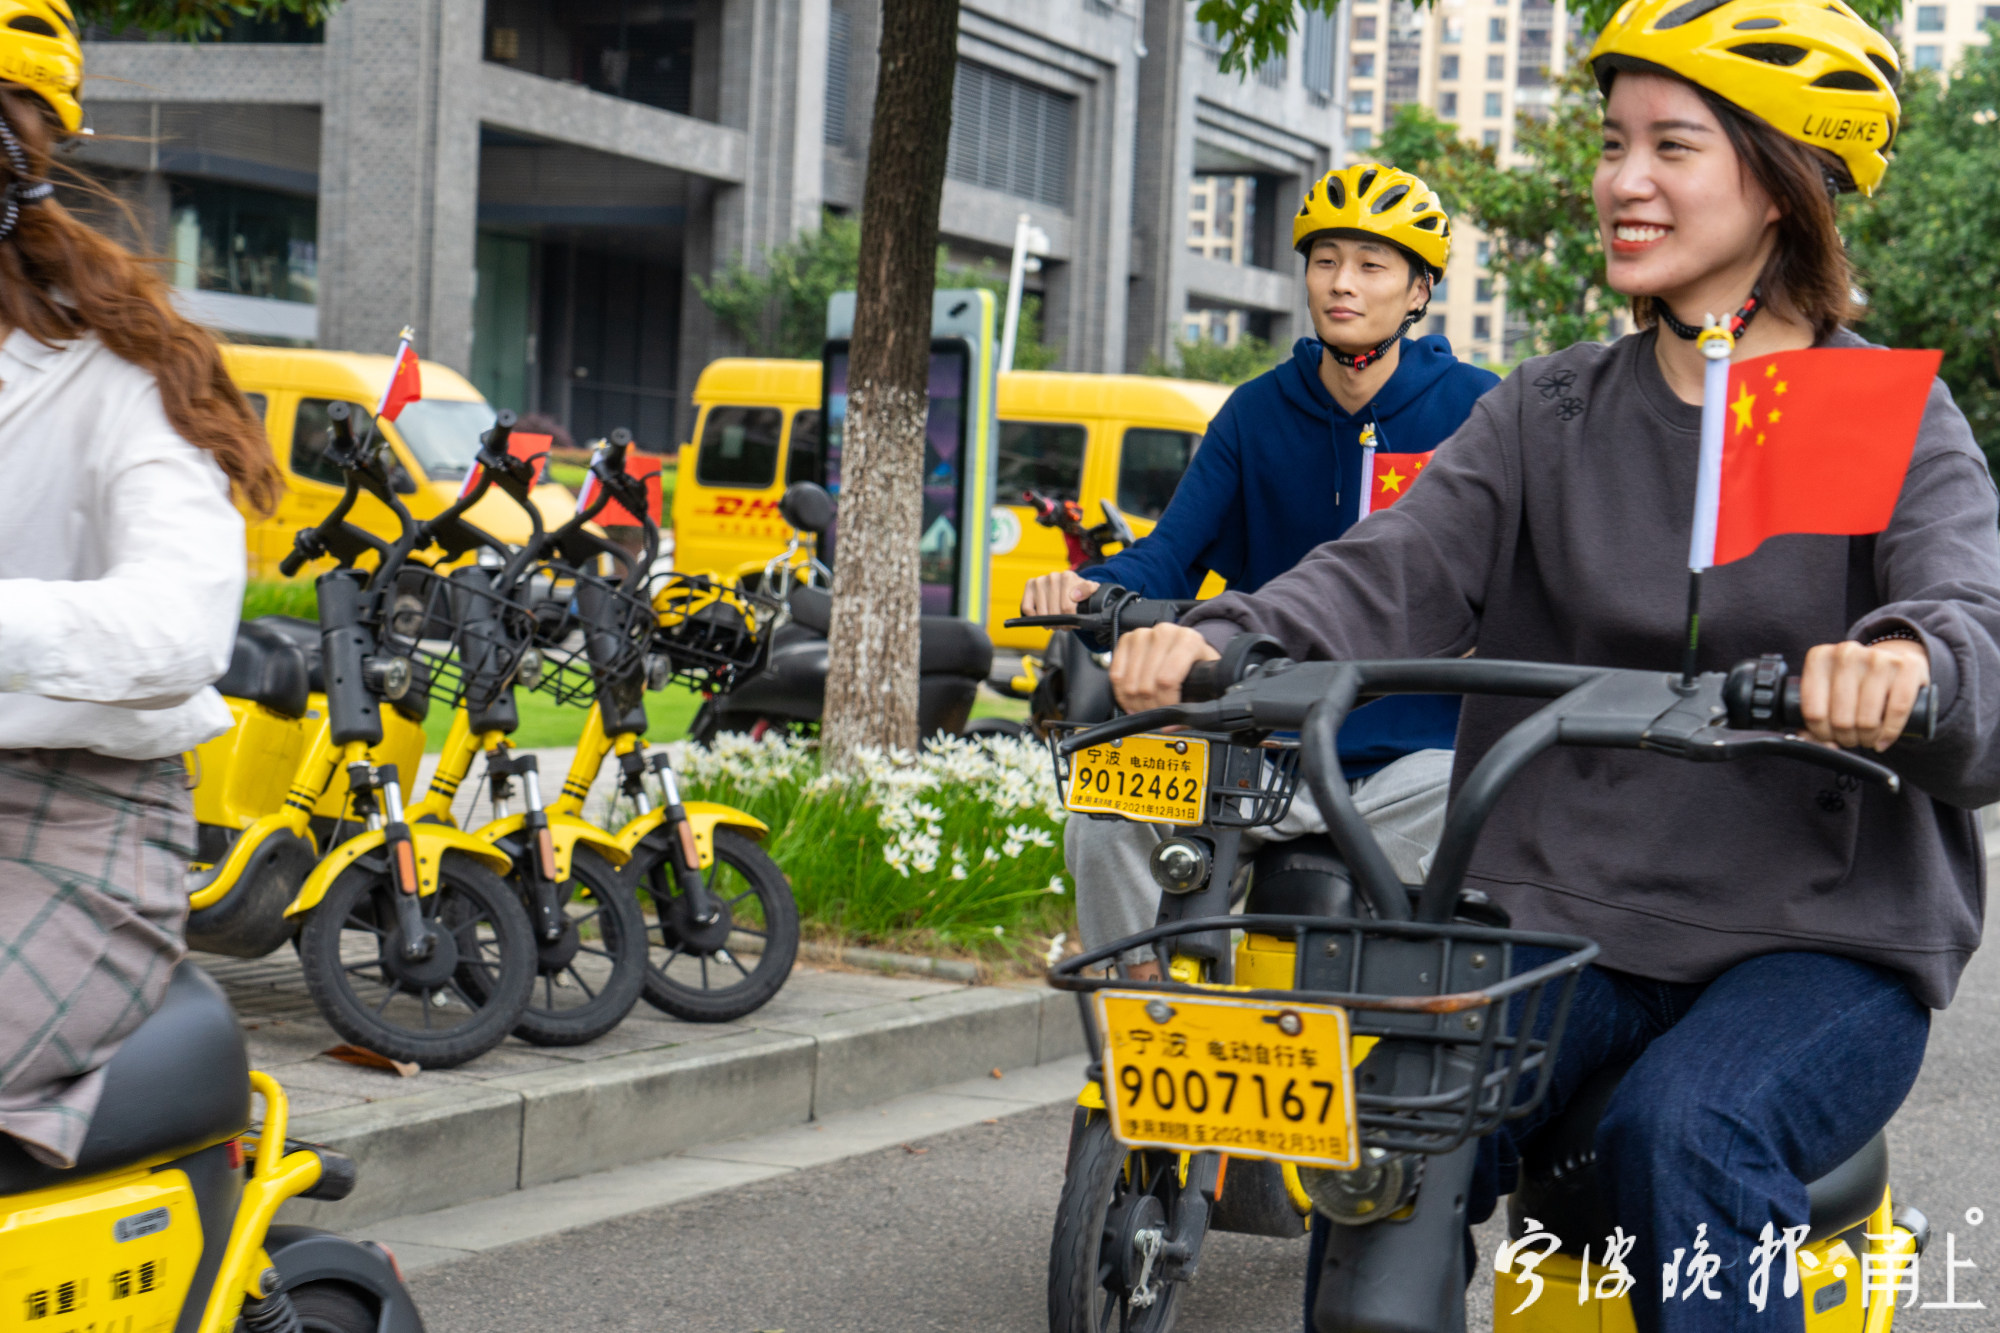 小遛电单车实现城市精细运维,宁波文明城市"六连冠"背后的共享出行